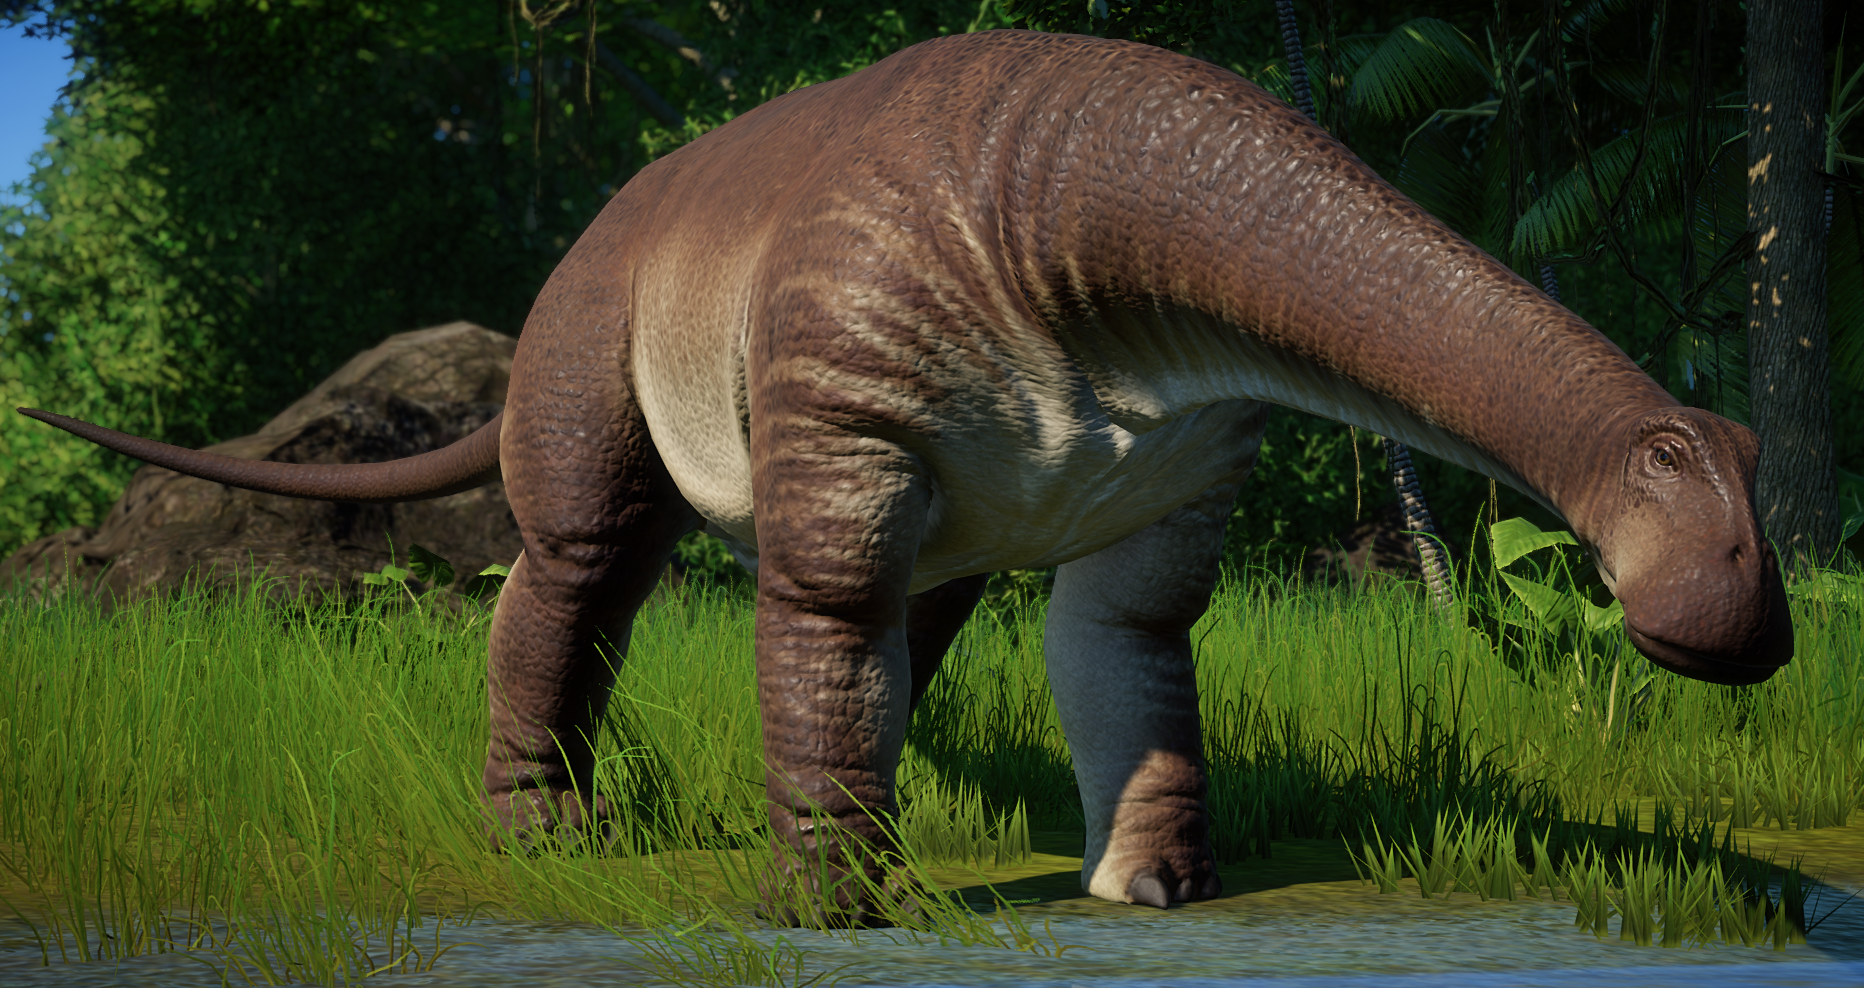 Nigersaurus Jurassic World Evolution Wiki Fandom